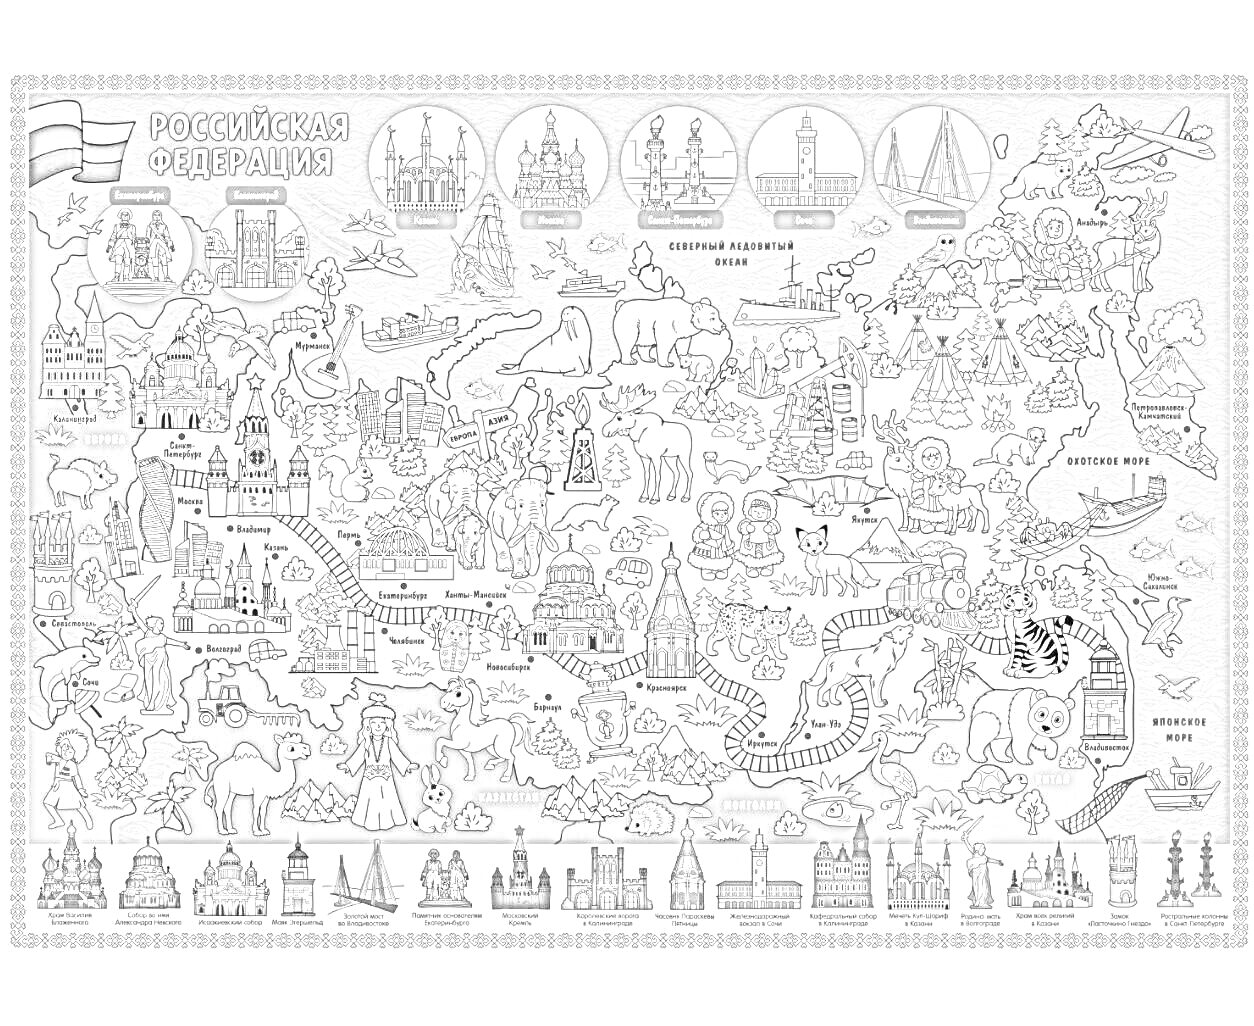 Раскраска Карта Российской Федерации с вариациями архитектурных и природных достопримечательностей, животных и символов регионов.